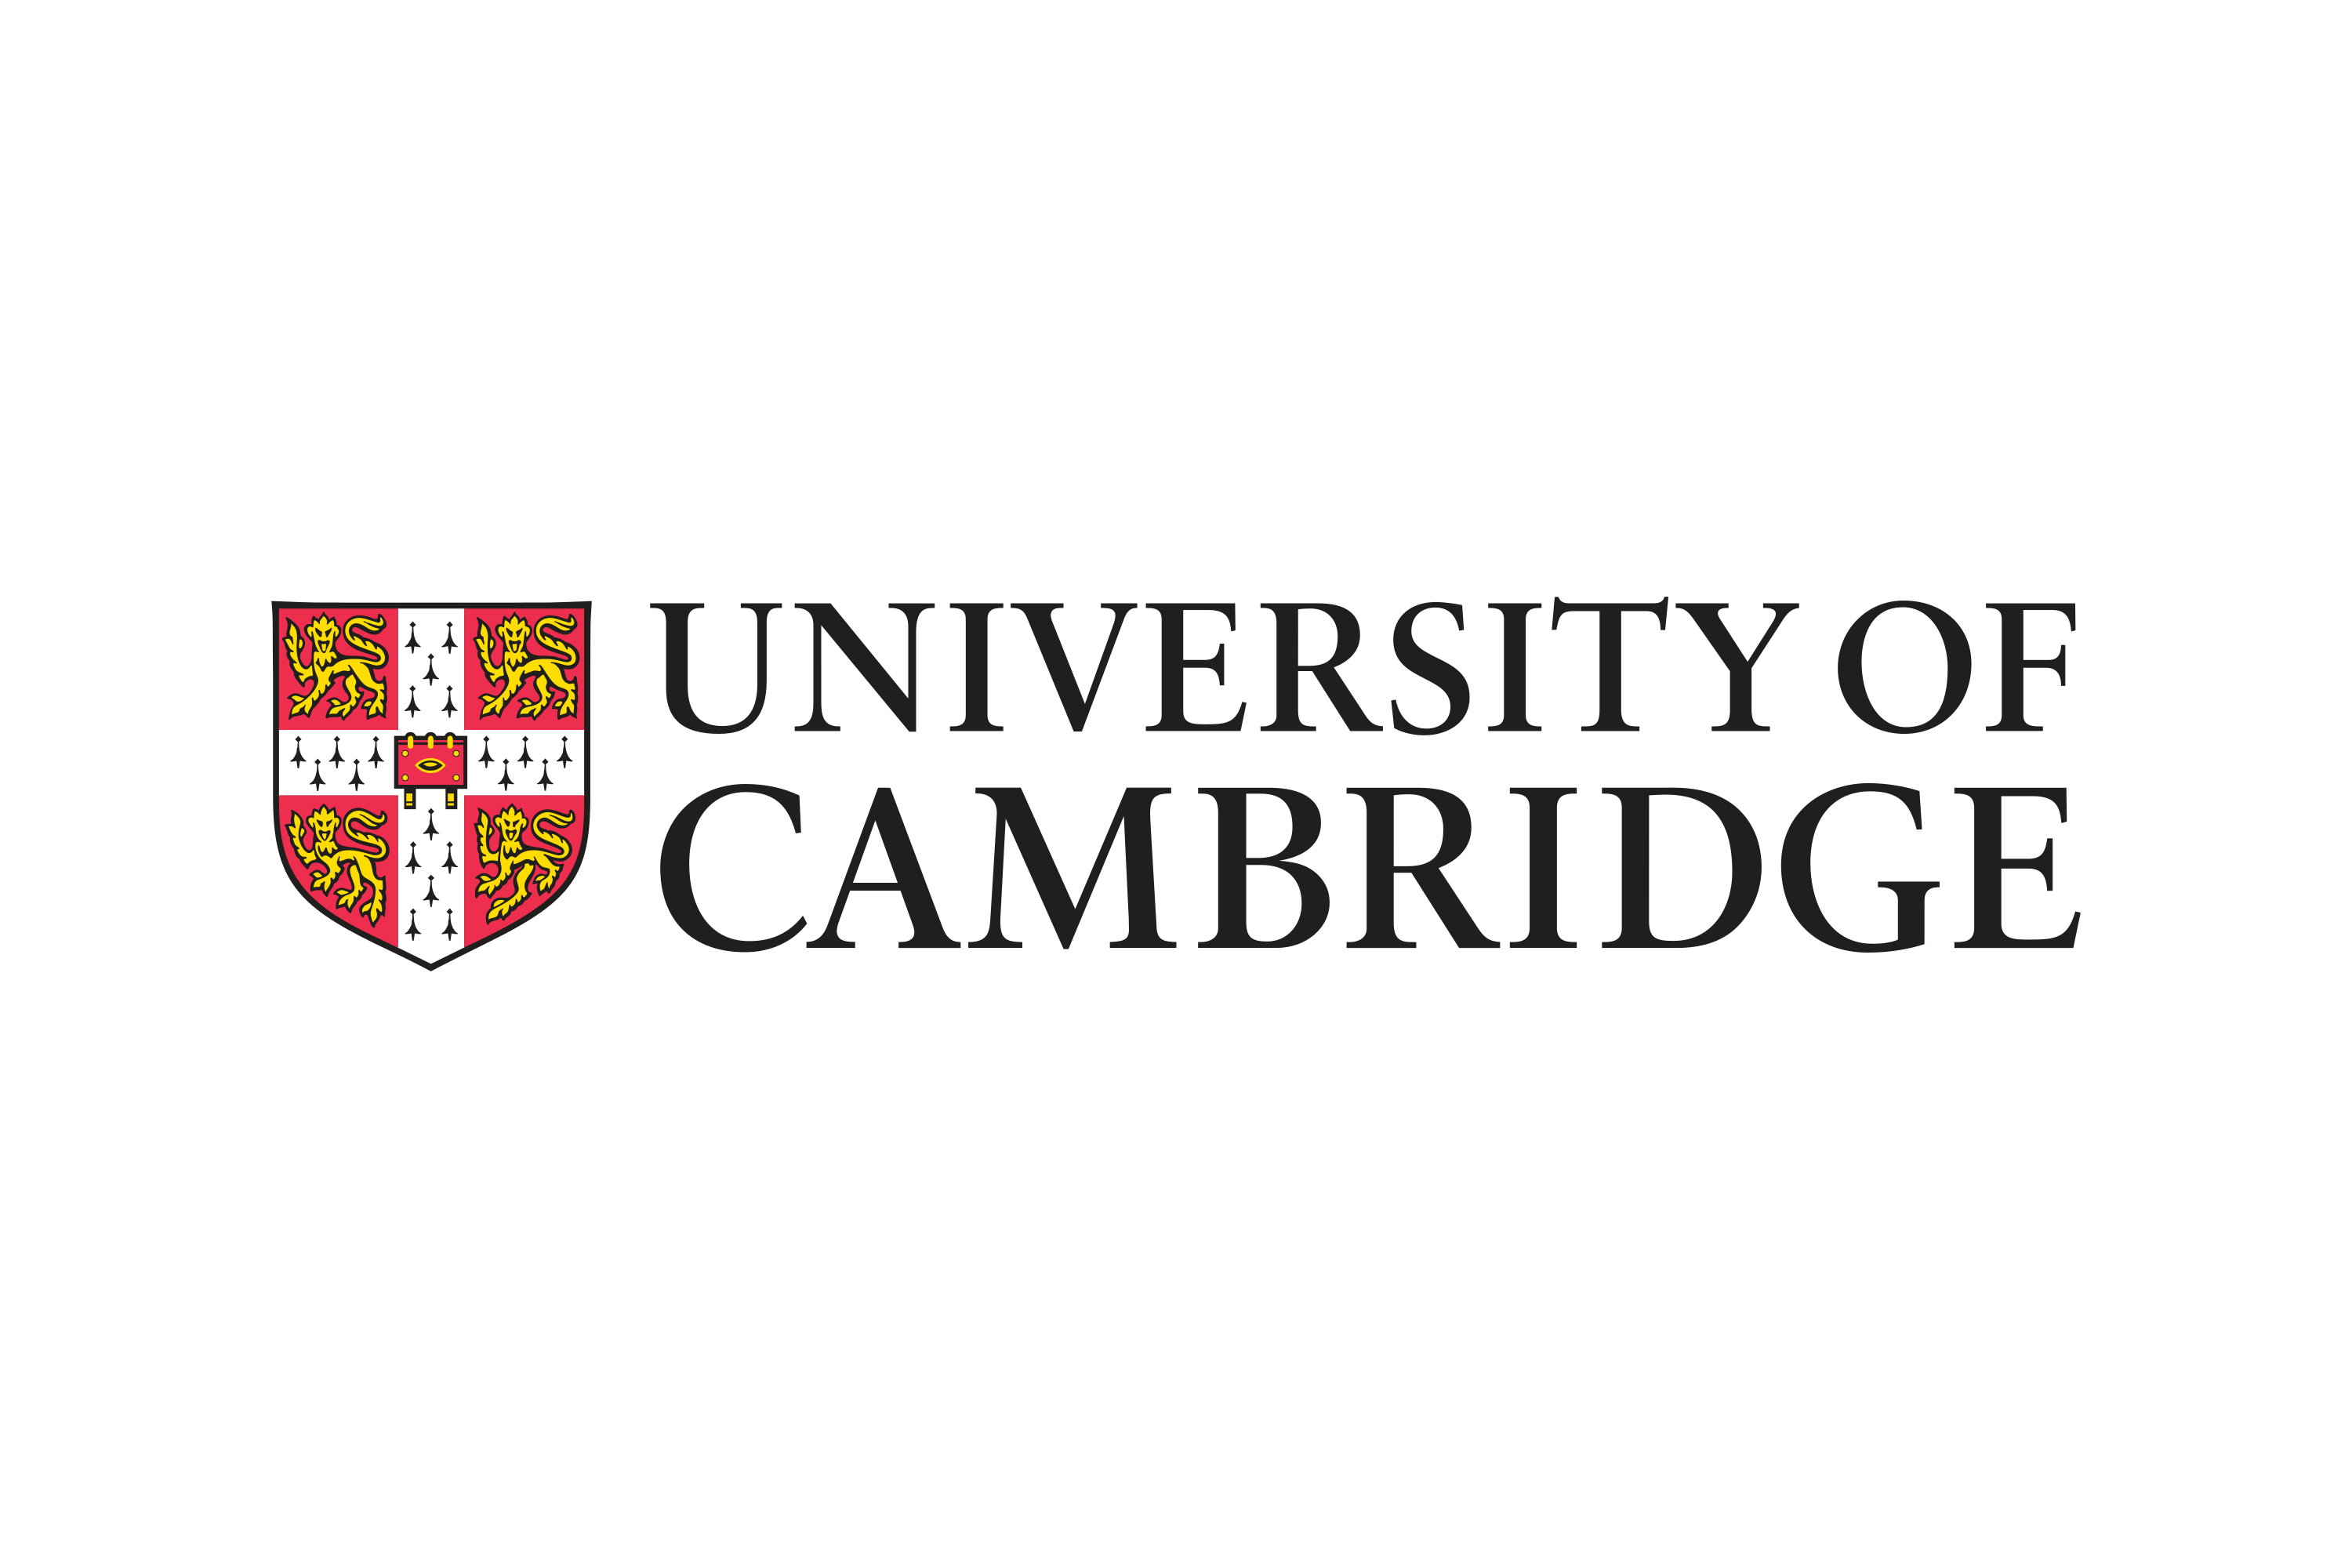 Https cambridge org. Кембриджский университет герб. Издательство Cambridge University Press. Cambridge University Press логотип. Издательство Кембриджского университета.